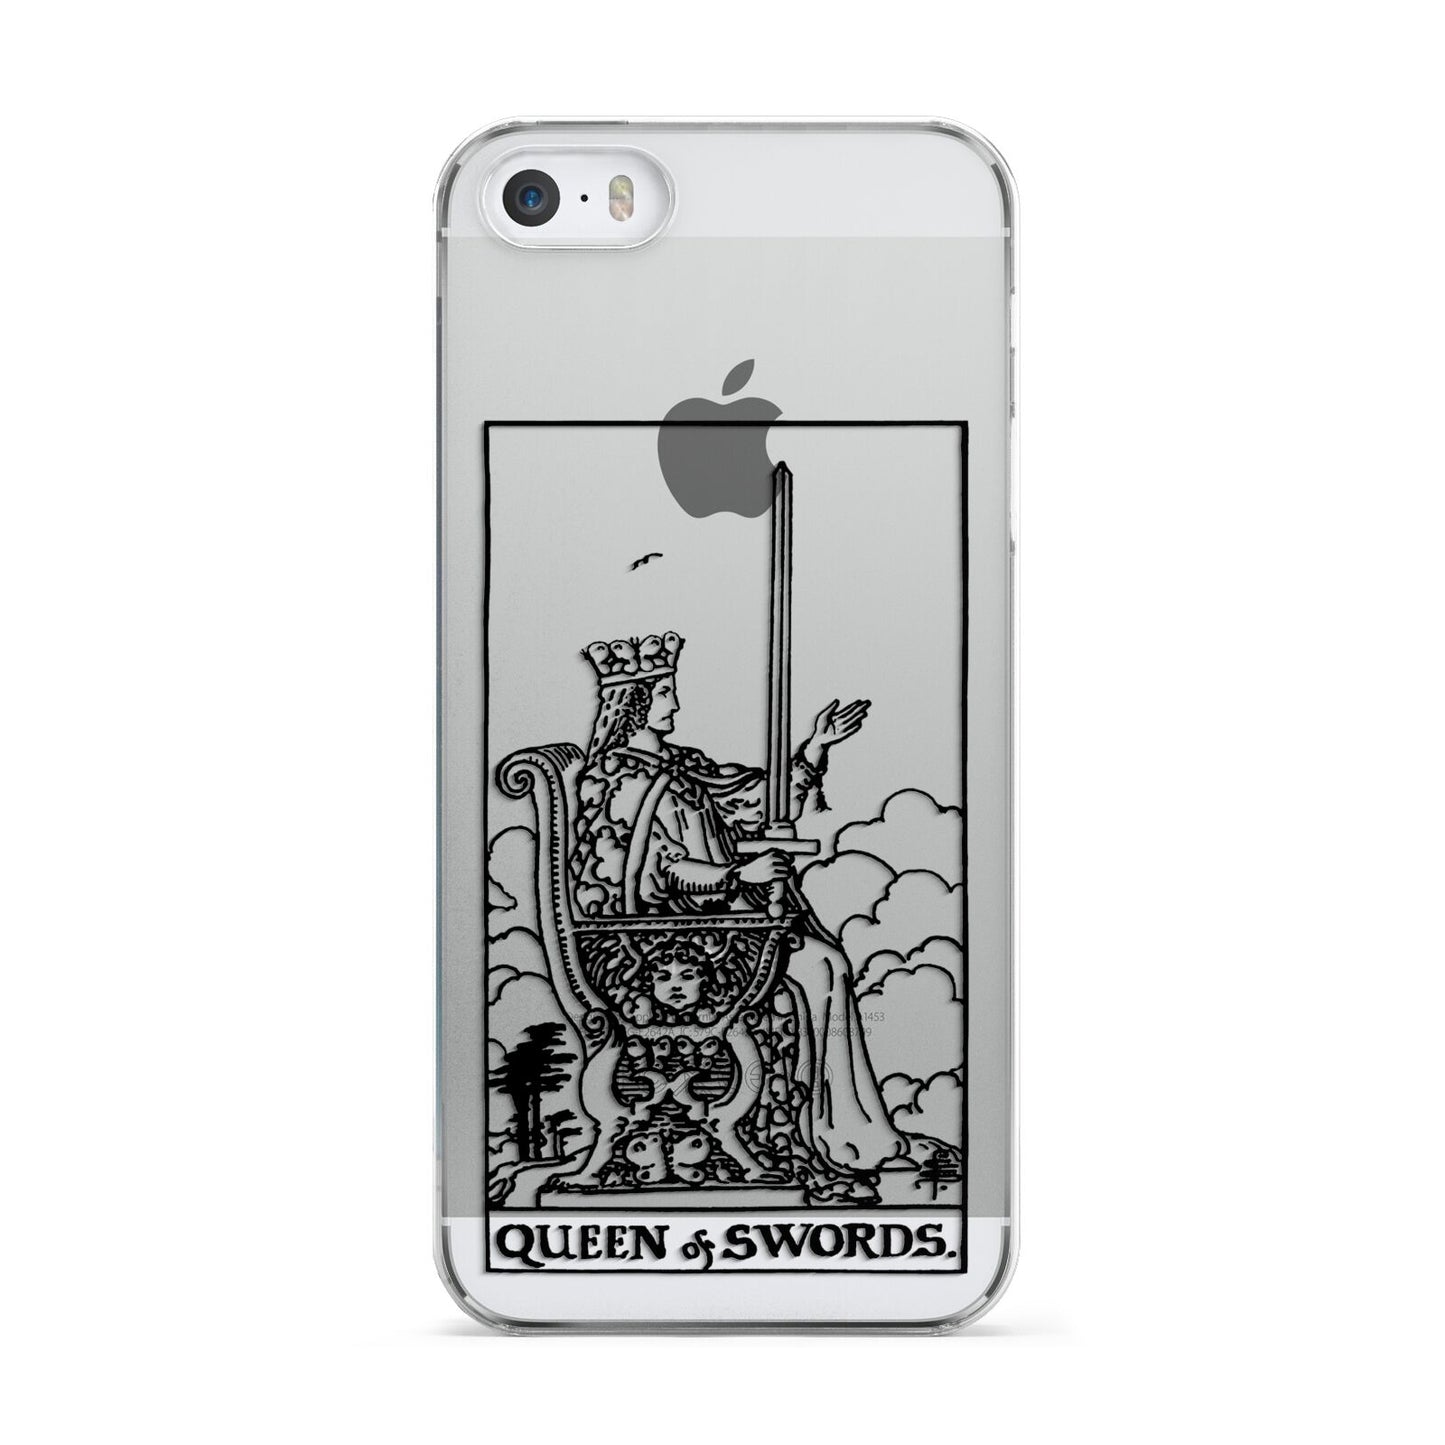 Queen of Swords Monochrome Apple iPhone 5 Case